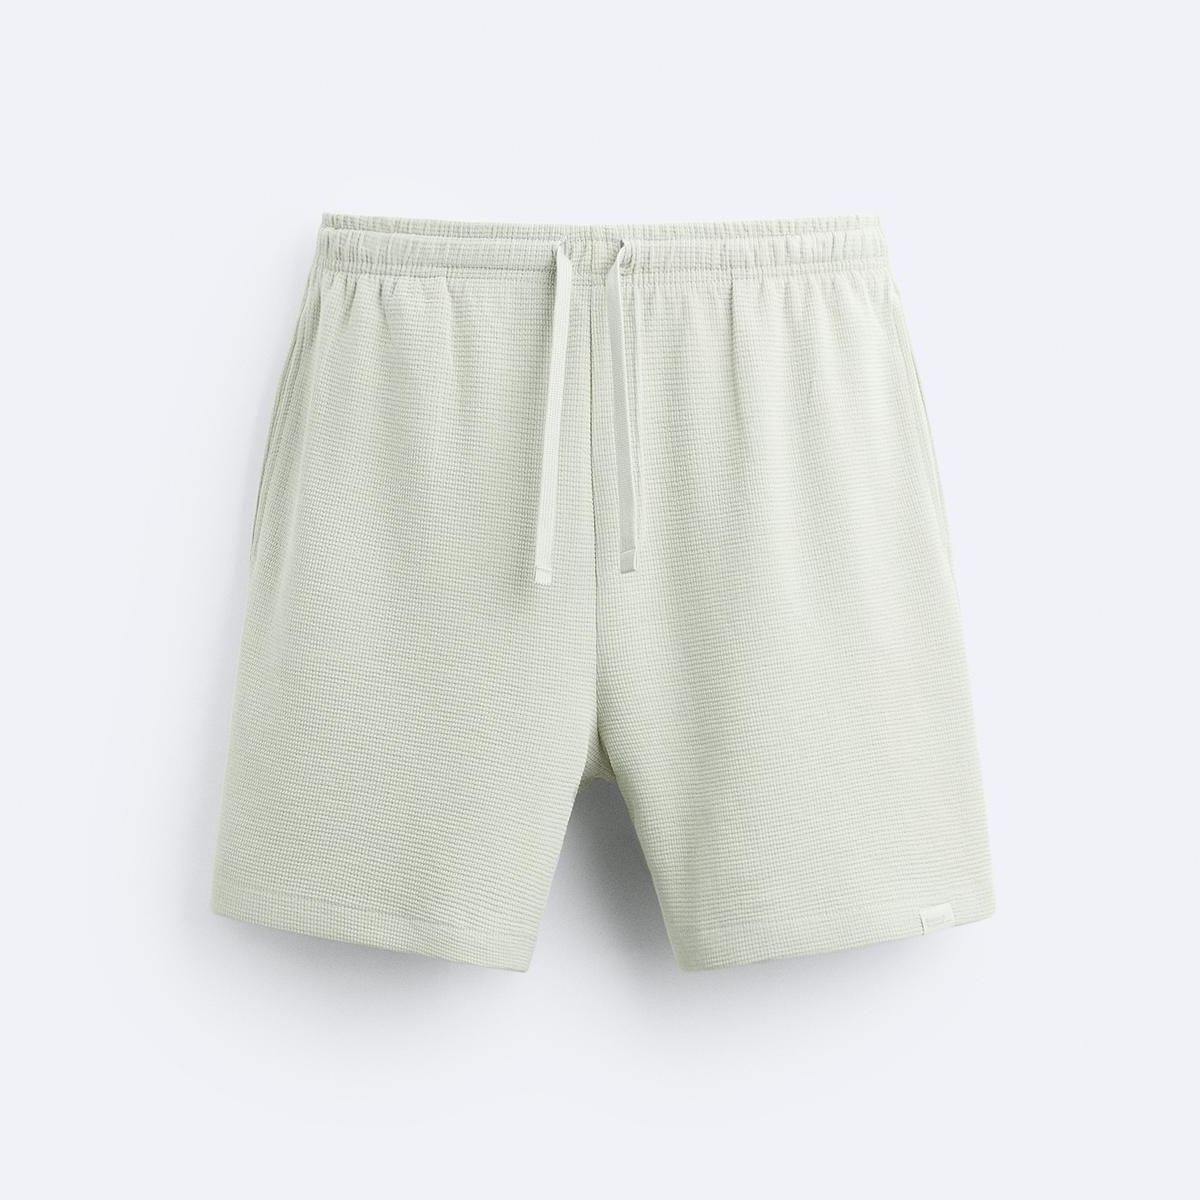 шорты zara soft textured bermuda желтовато белый Шорты Zara Textured Bermuda With Label, светло-зеленый